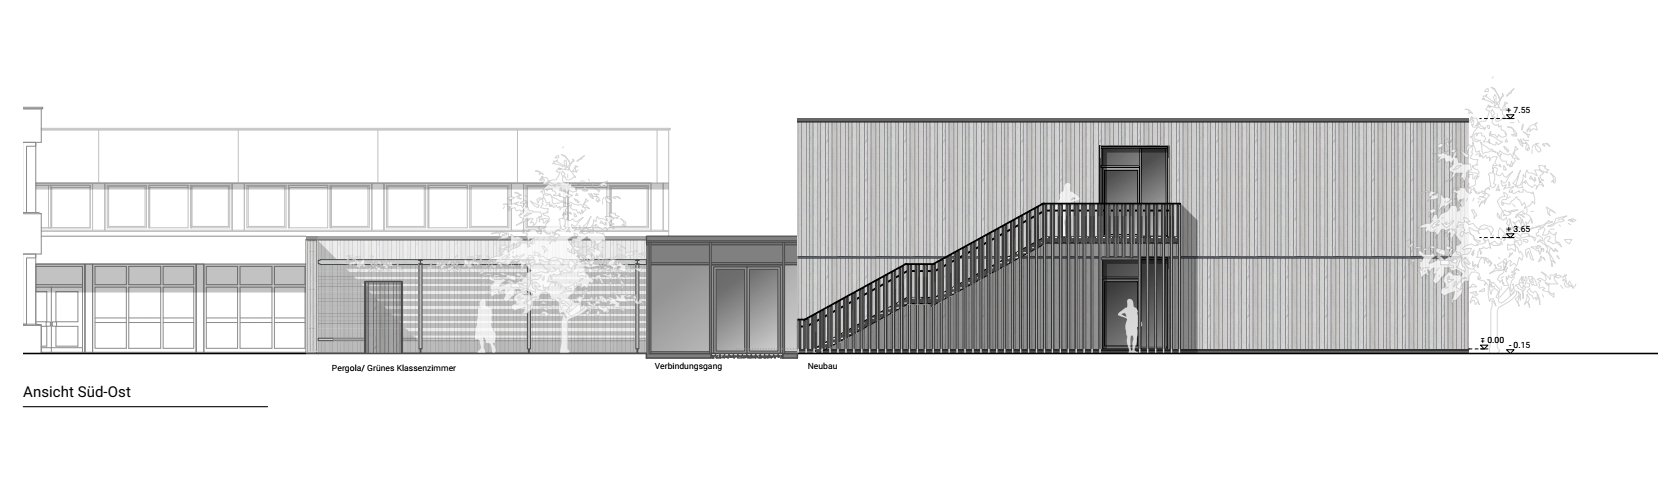 Visualisierung der Süd-Ost-Ansicht mit der Verbindung zwischen Bestandsgebäude und Erweiterungsbau 